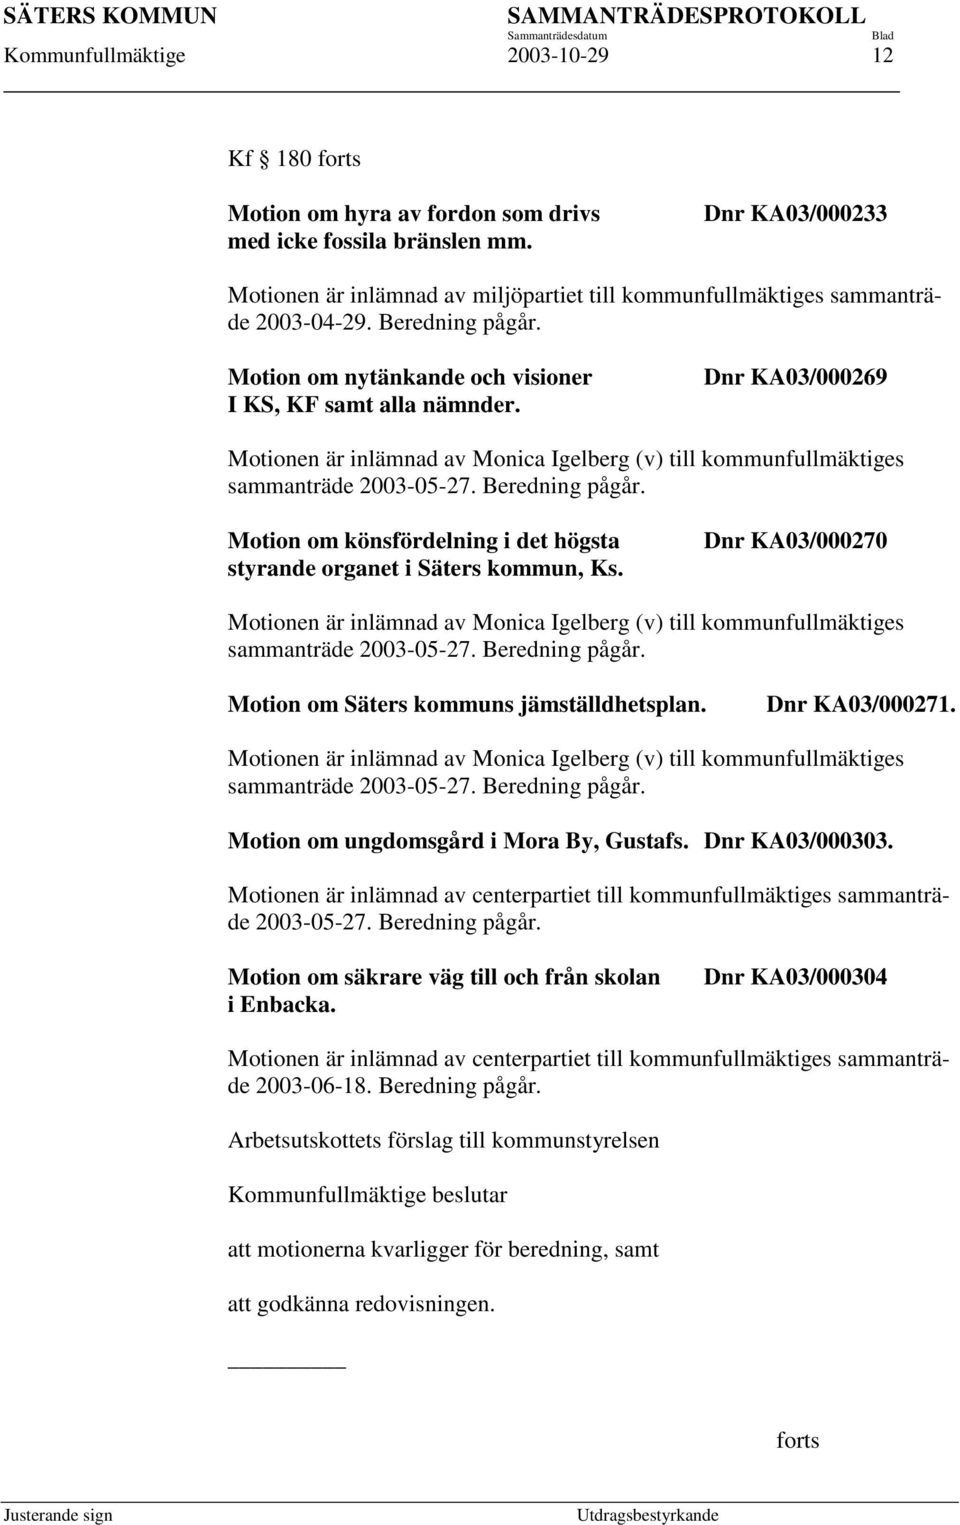 Dnr KA03/000269 Motionen är inlämnad av Monica Igelberg (v) till kommunfullmäktiges sammanträde 2003-05-27. Beredning pågår. Motion om könsfördelning i det högsta styrande organet i Säters kommun, Ks.